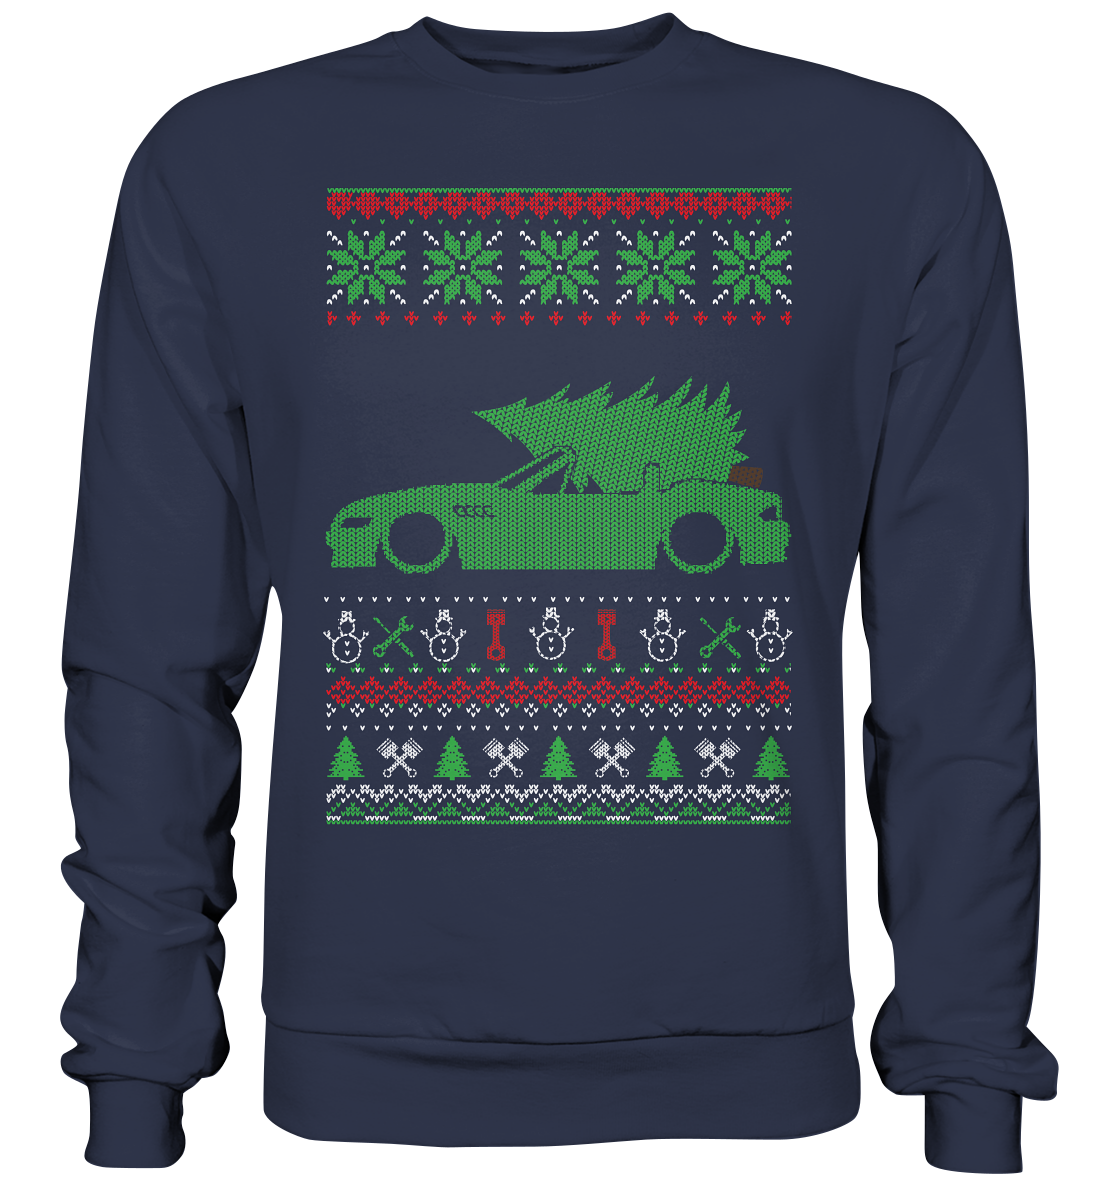 BGKEZ3RUGLY-Premium Sweatshirt